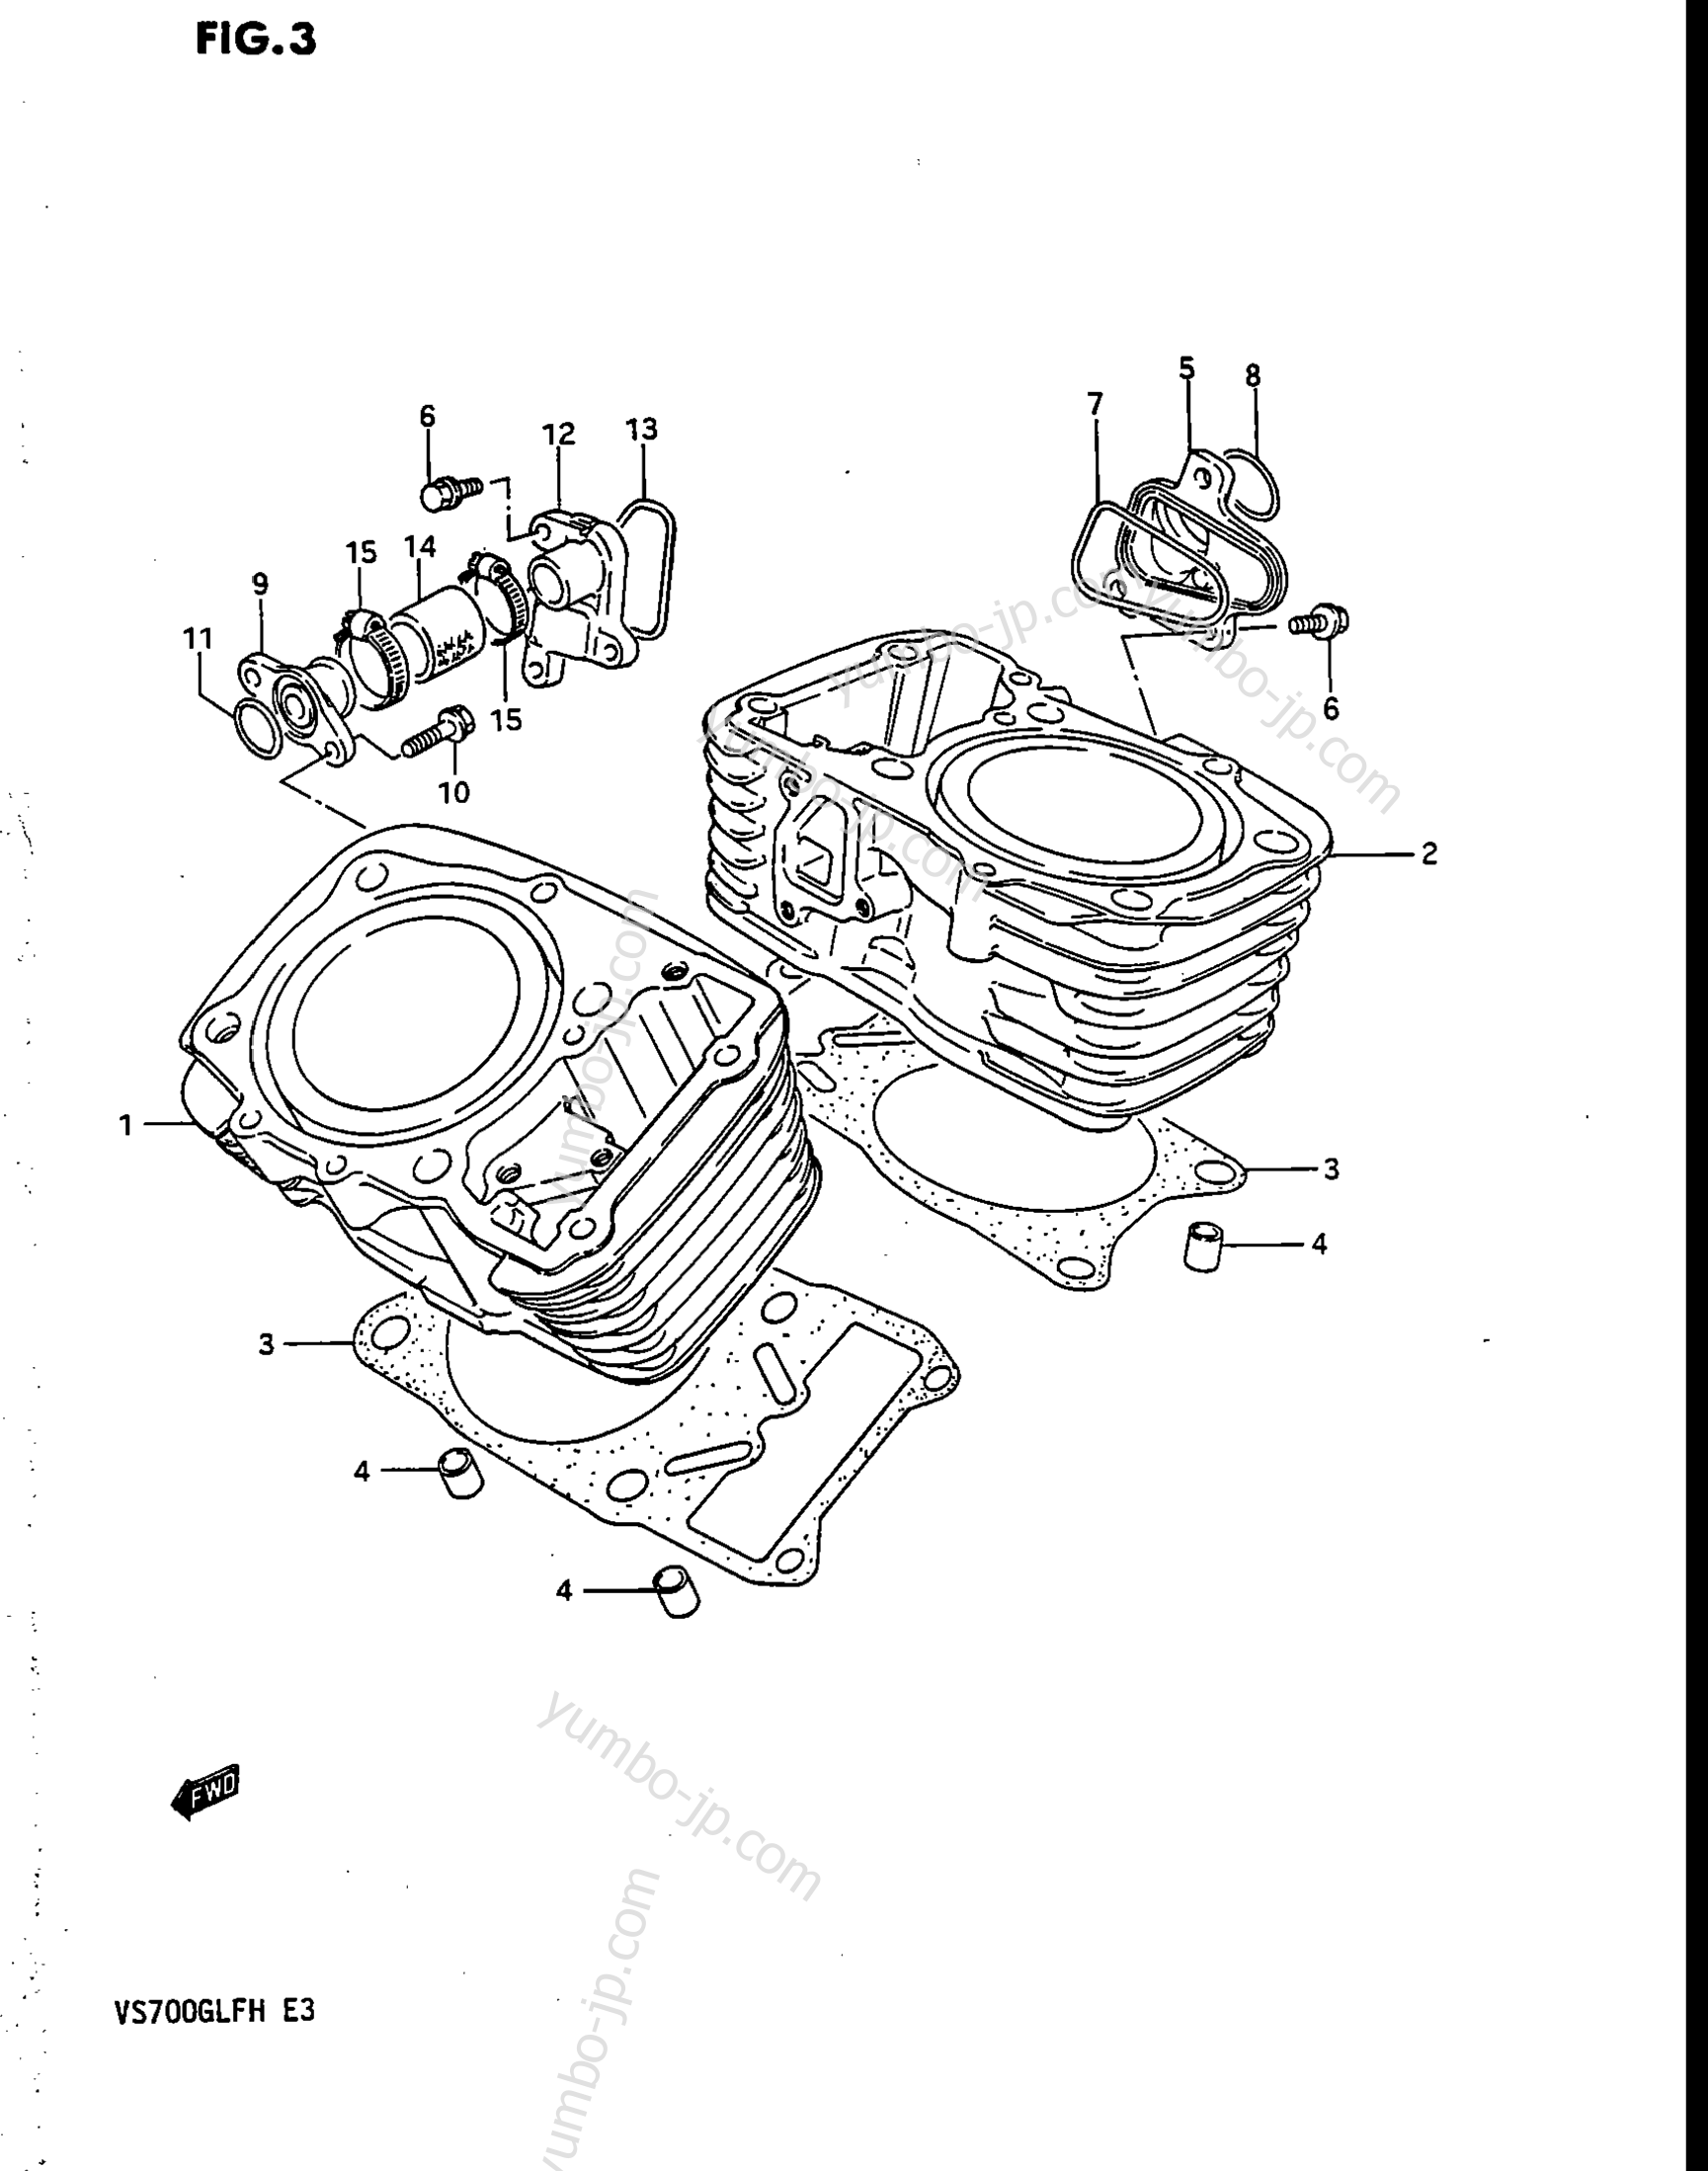 CYLINDER for motorcycles SUZUKI Intruder (VS700GLF) 1987 year